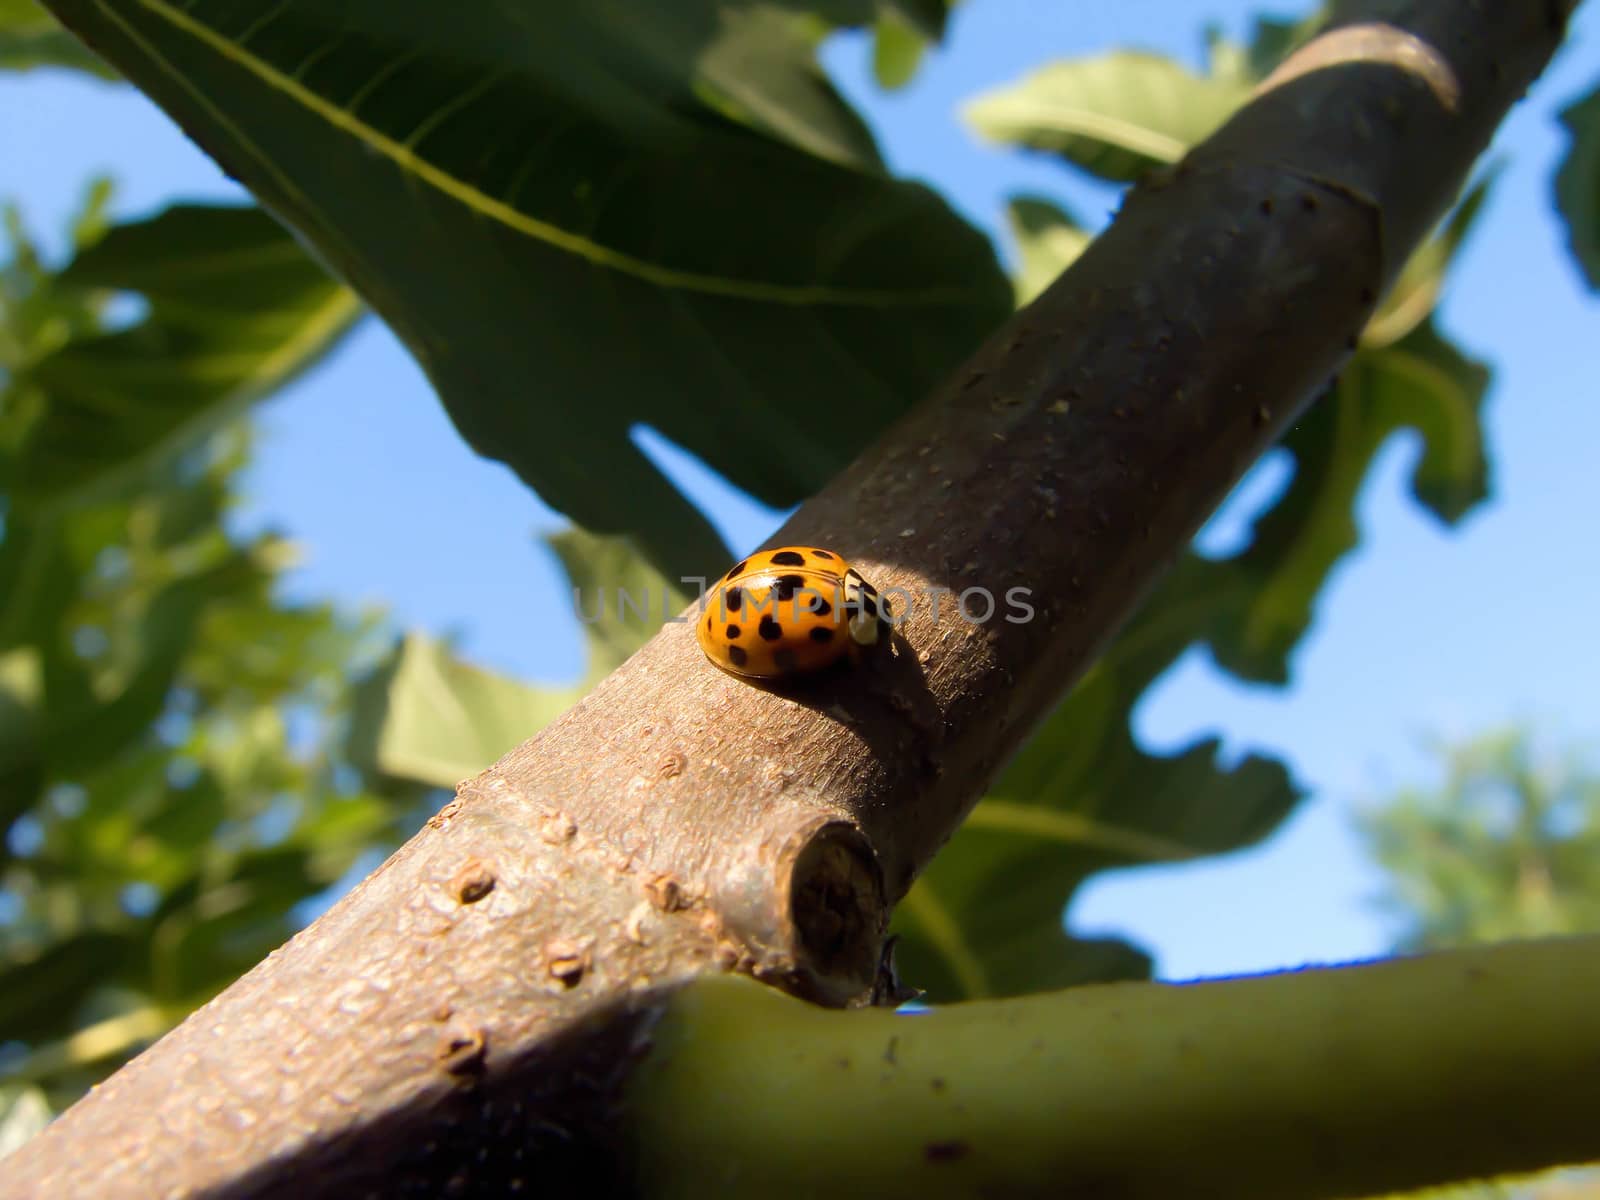 yellow ladybug by fadeinphotography